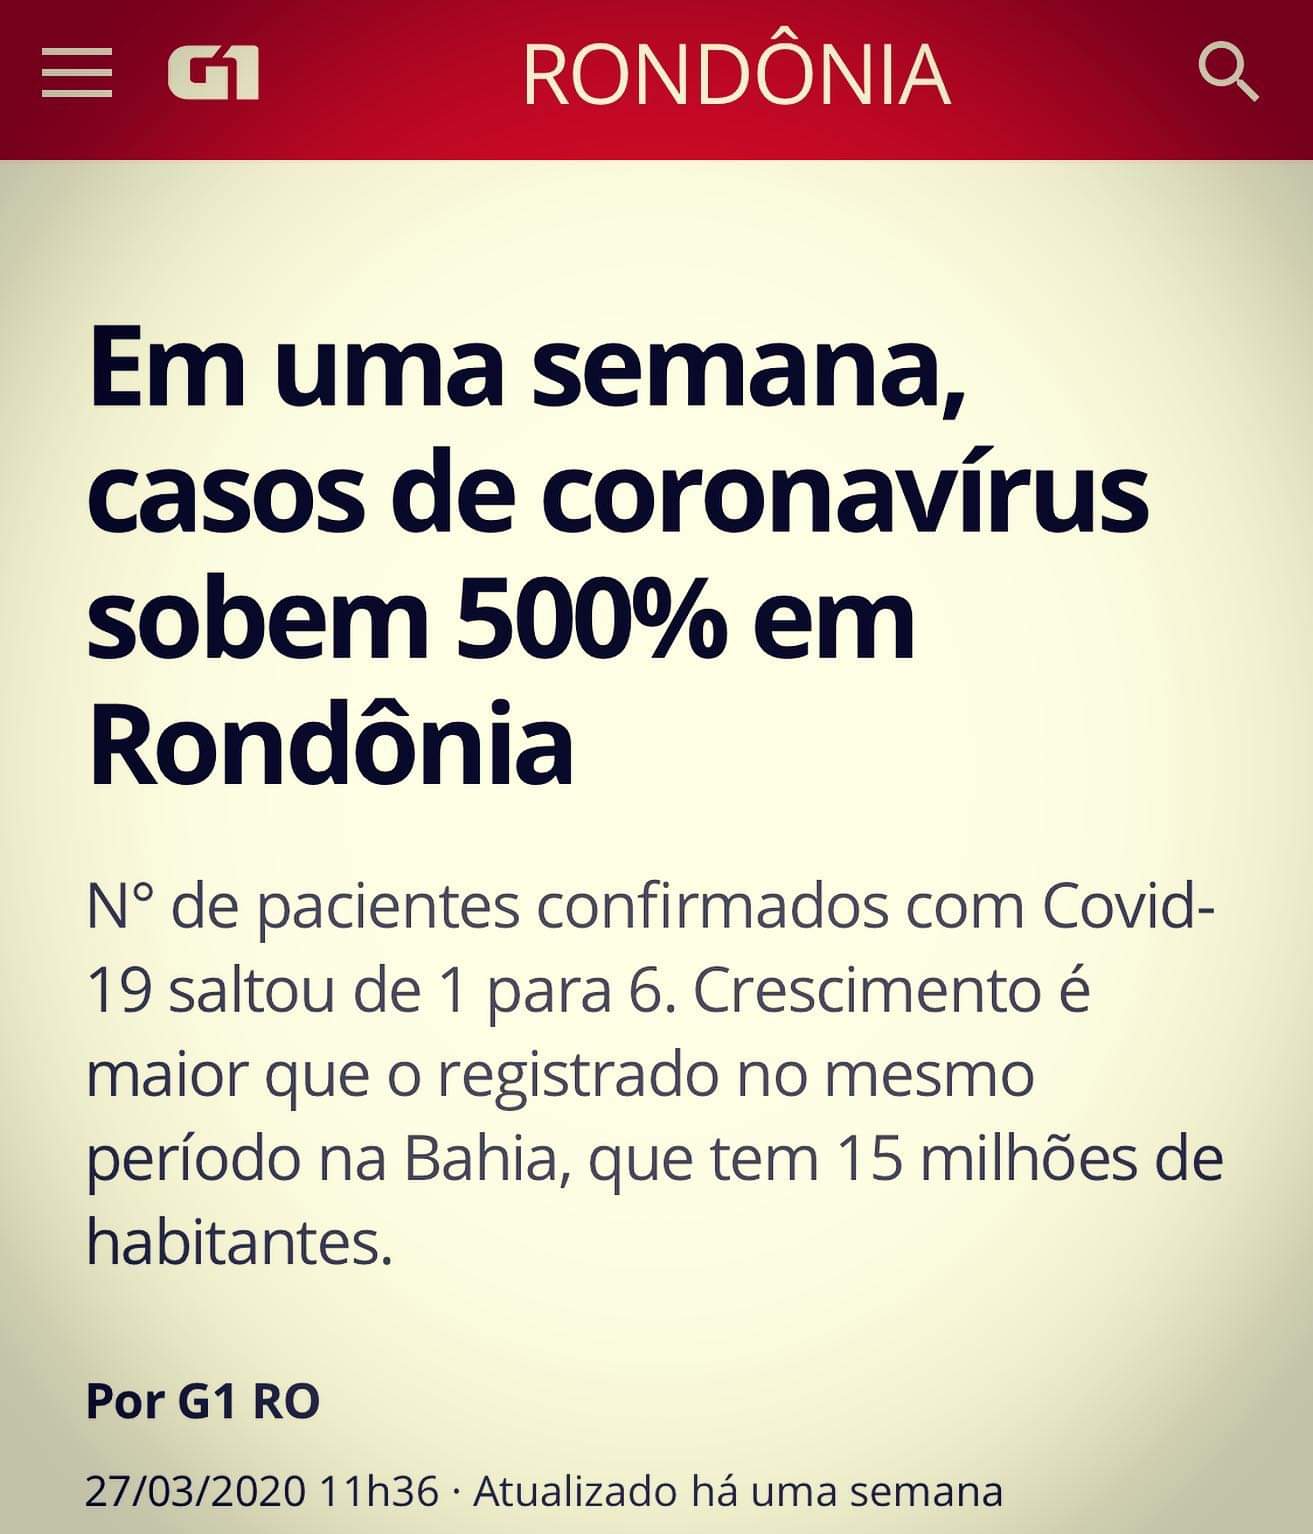 G1, Rondonia, 500